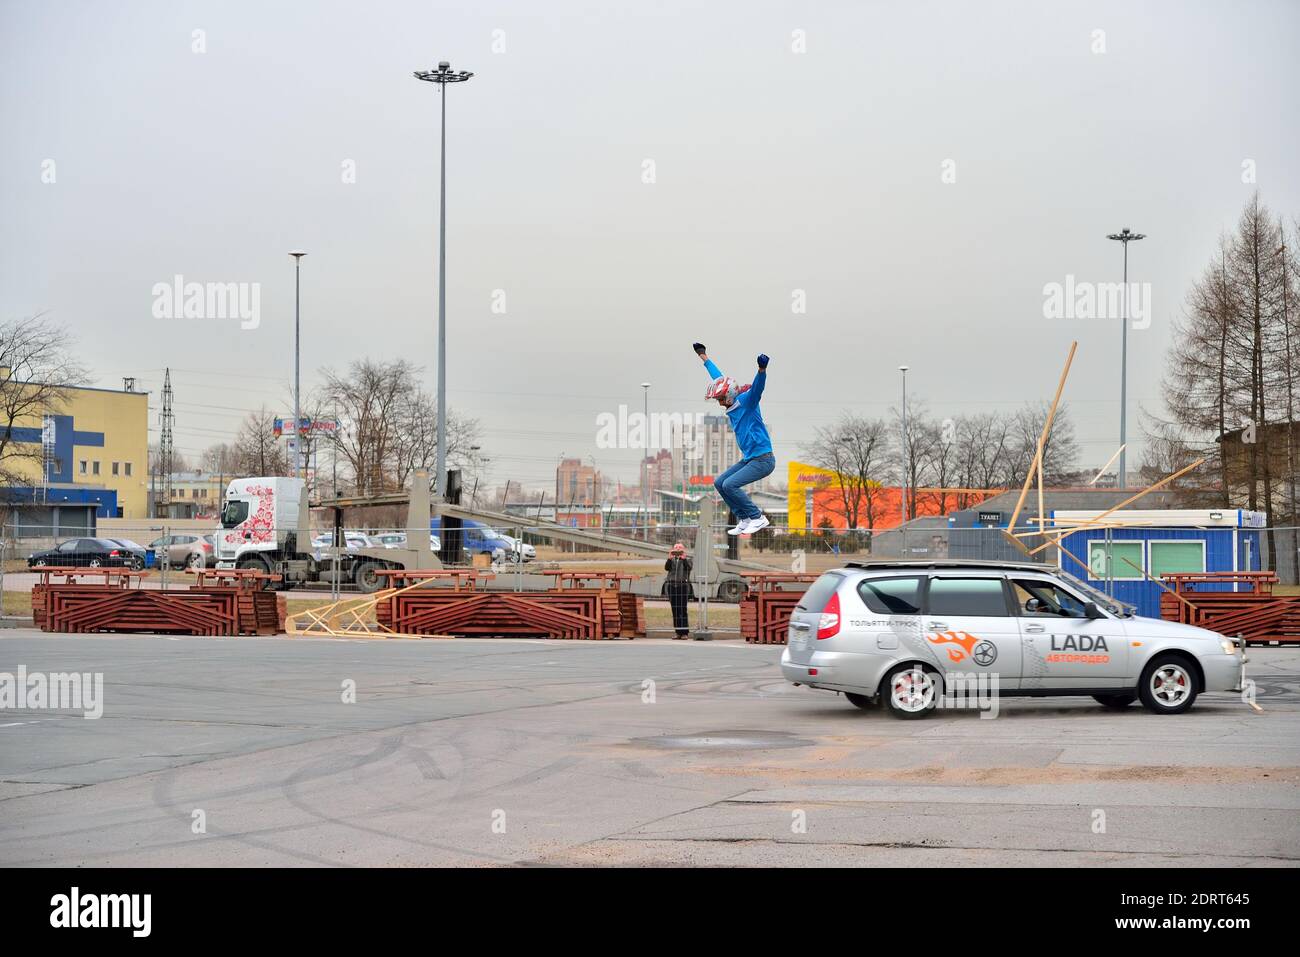 SAN PIETROBURGO, RUSSIA - 07 APRILE 2017: Stuntman atterra dopo che l'auto è stata colpita sotto lo stand durante lo spettacolo Lada-Truck Rodeo Thing a San Pietro Foto Stock